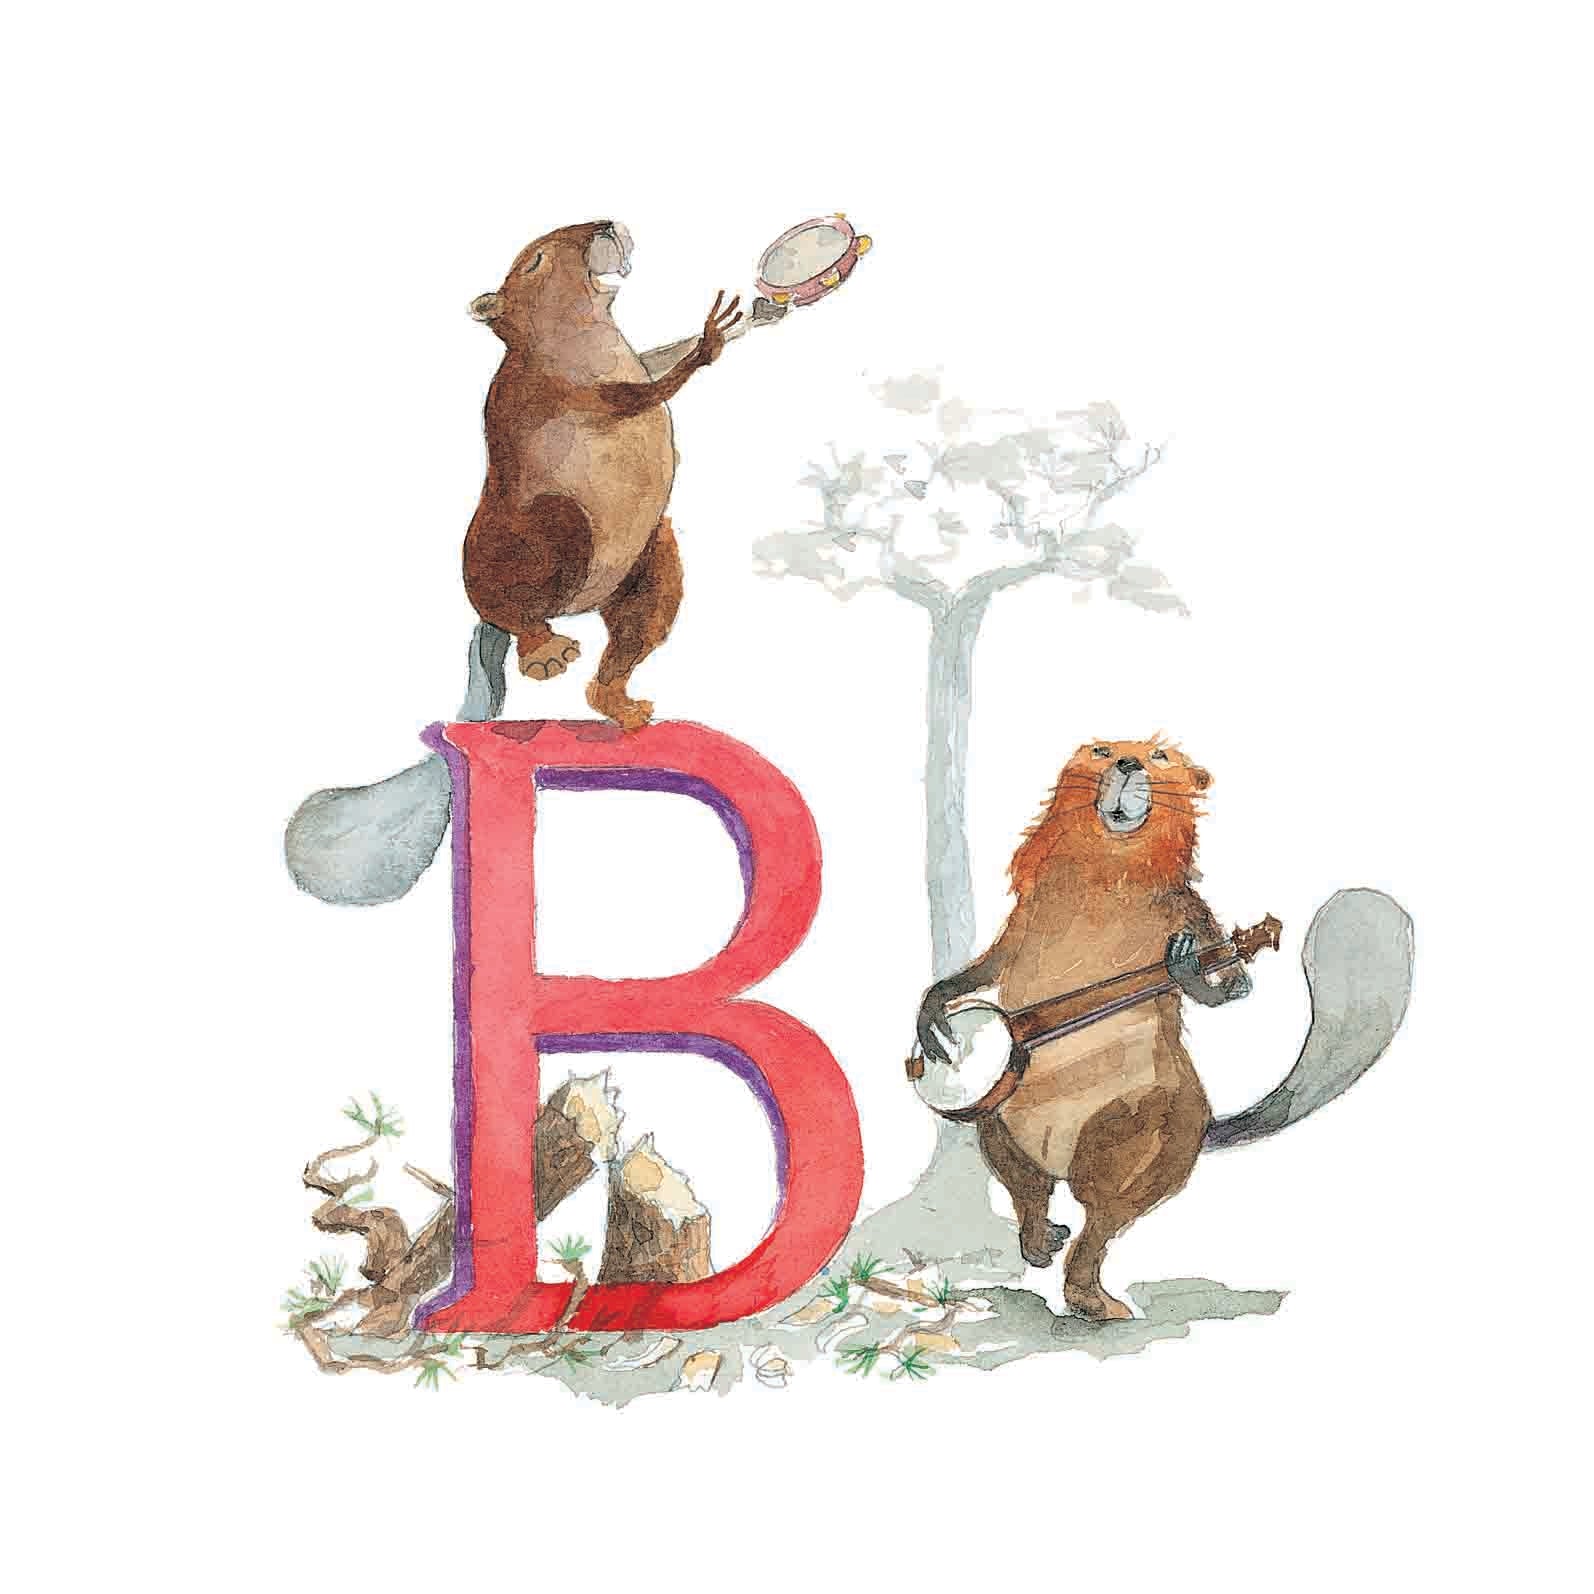 B for Beaver